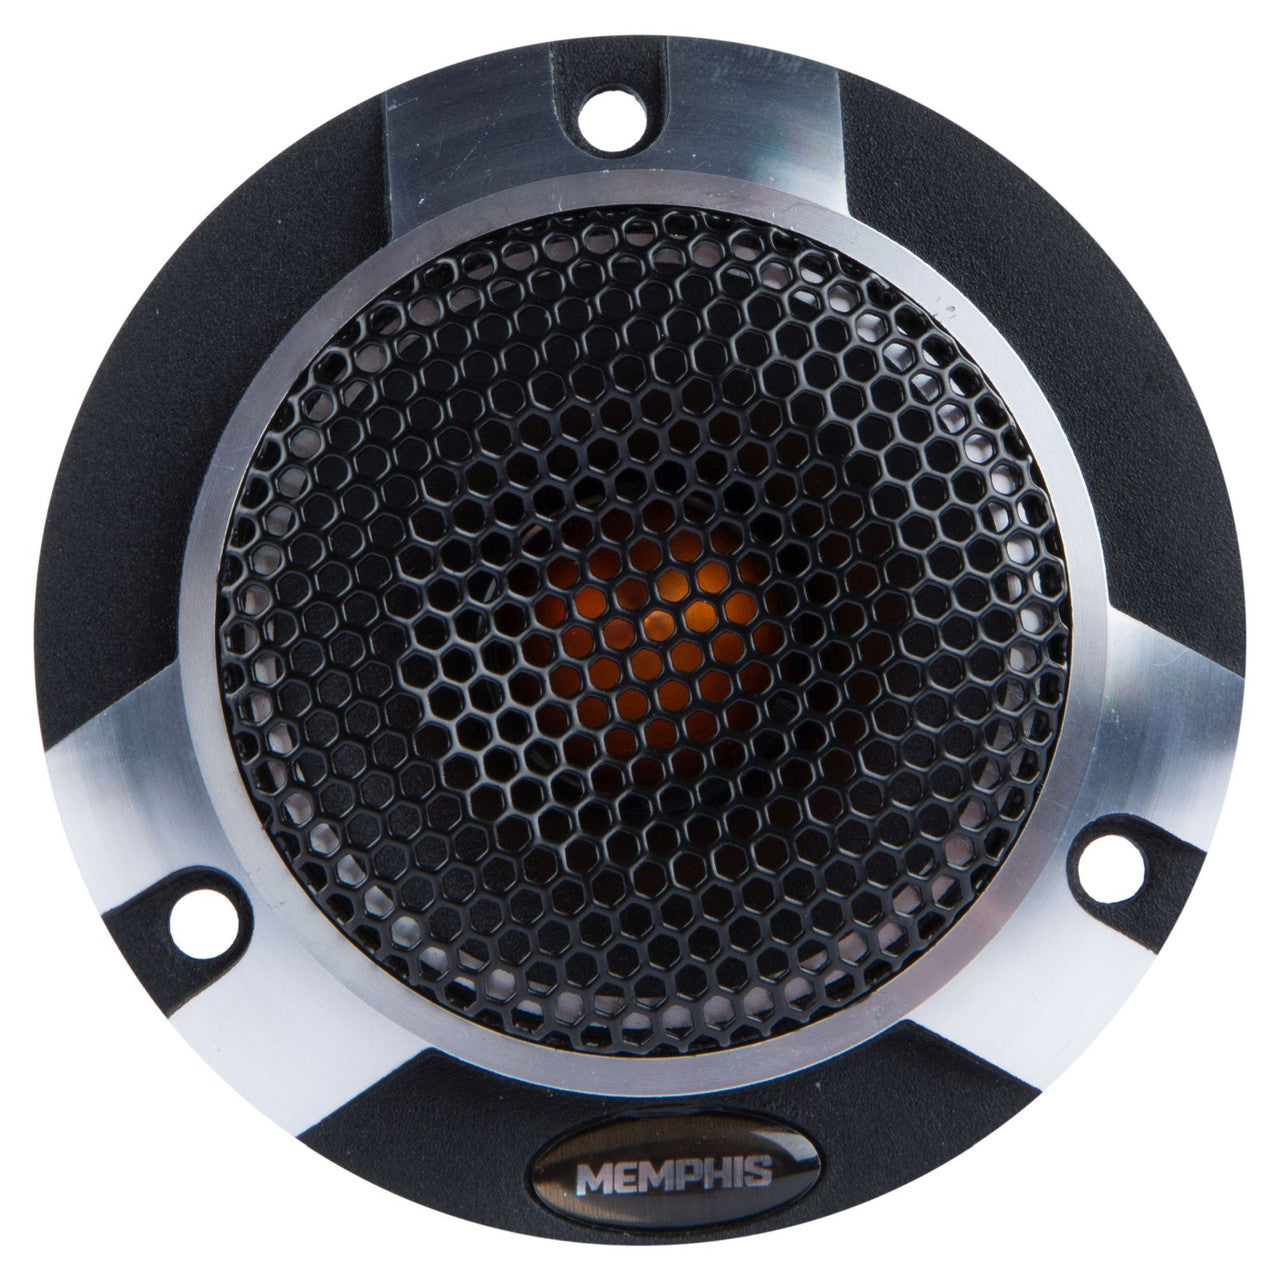 Memphis SRXP62C SRX Pro 6.5" Component Speaker System - Pair